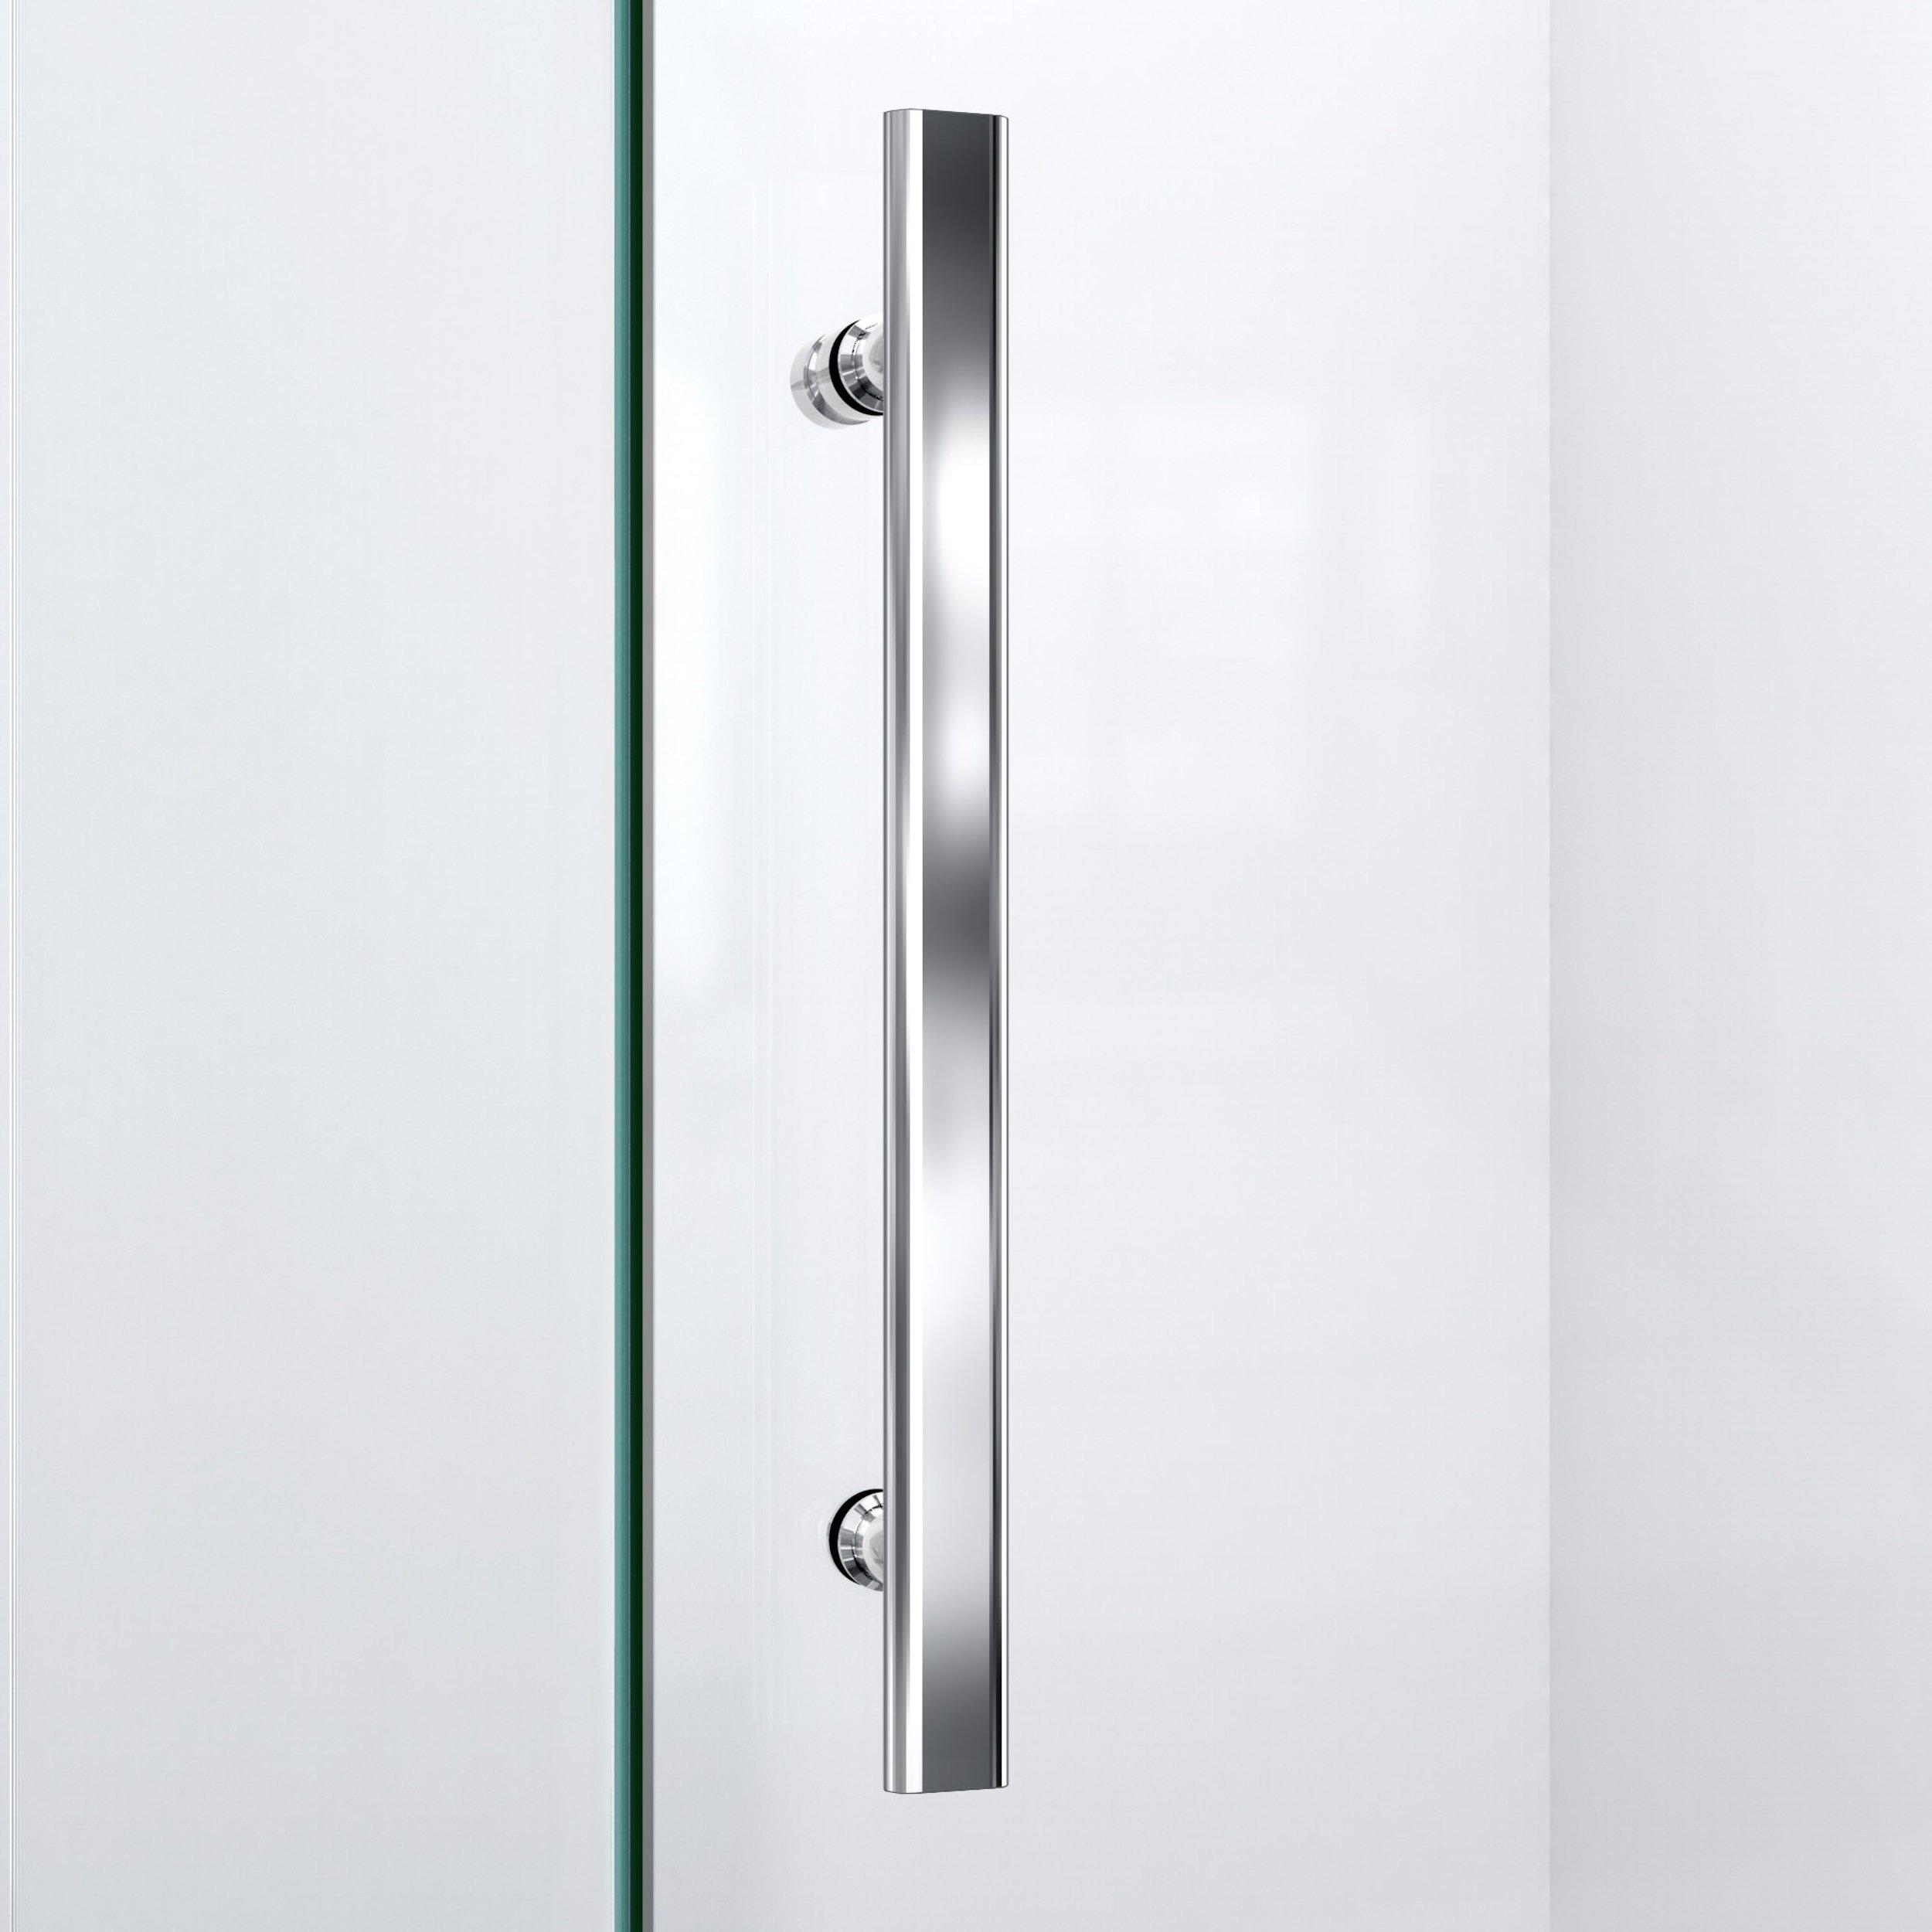 Quatra Lux Chrome Enclosure Shower Door